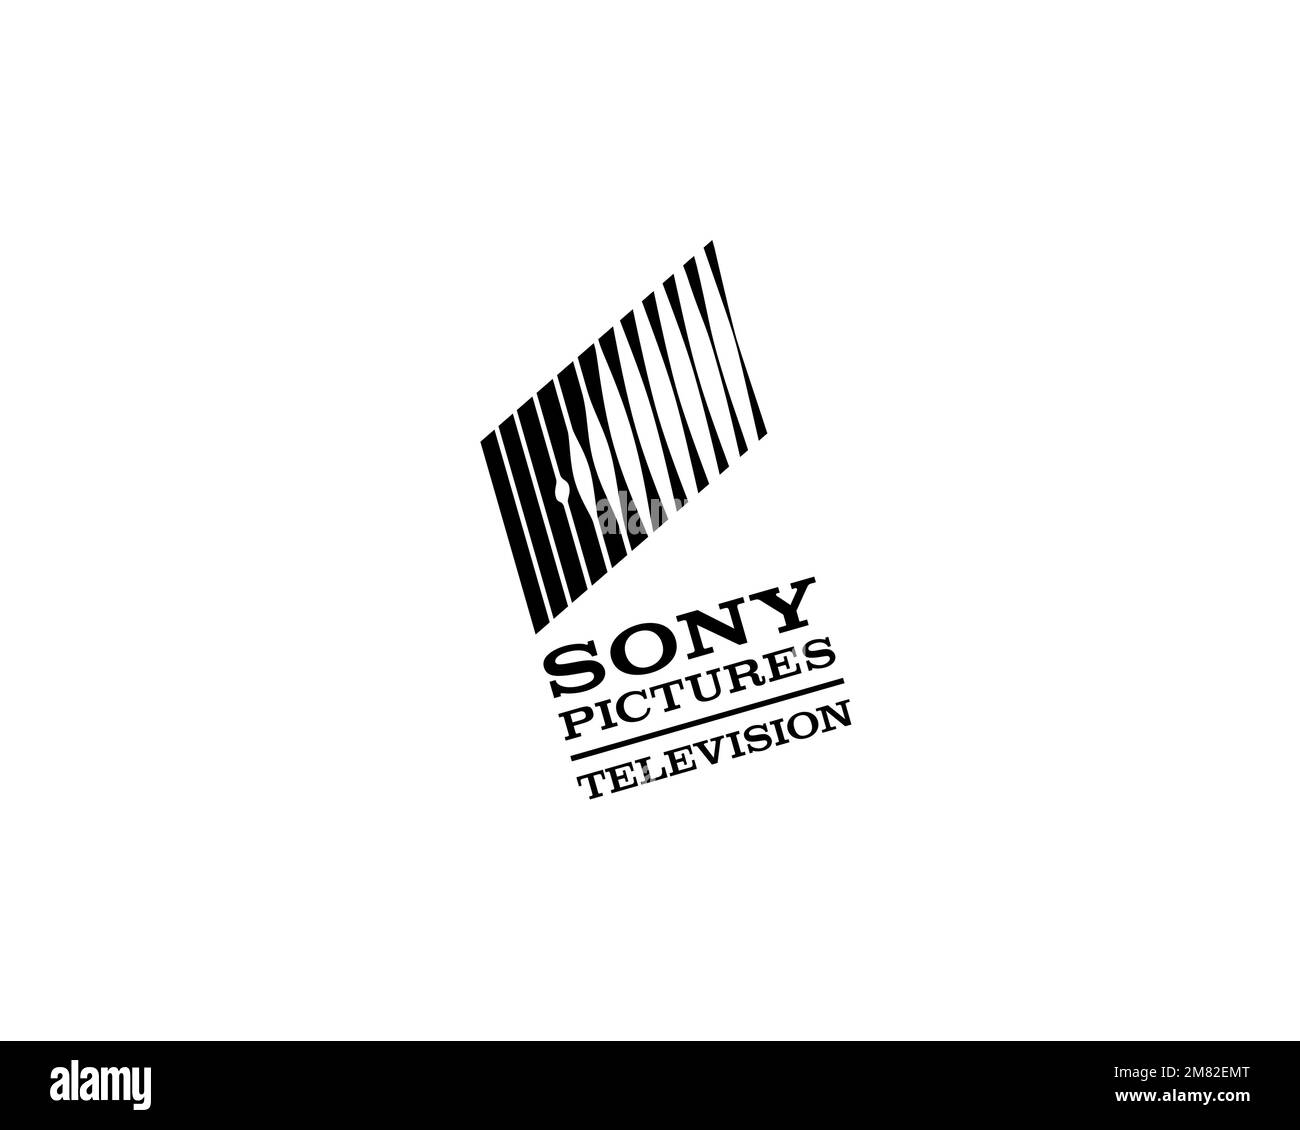 Sony Pictures Television, logo pivoté, fond blanc Banque D'Images